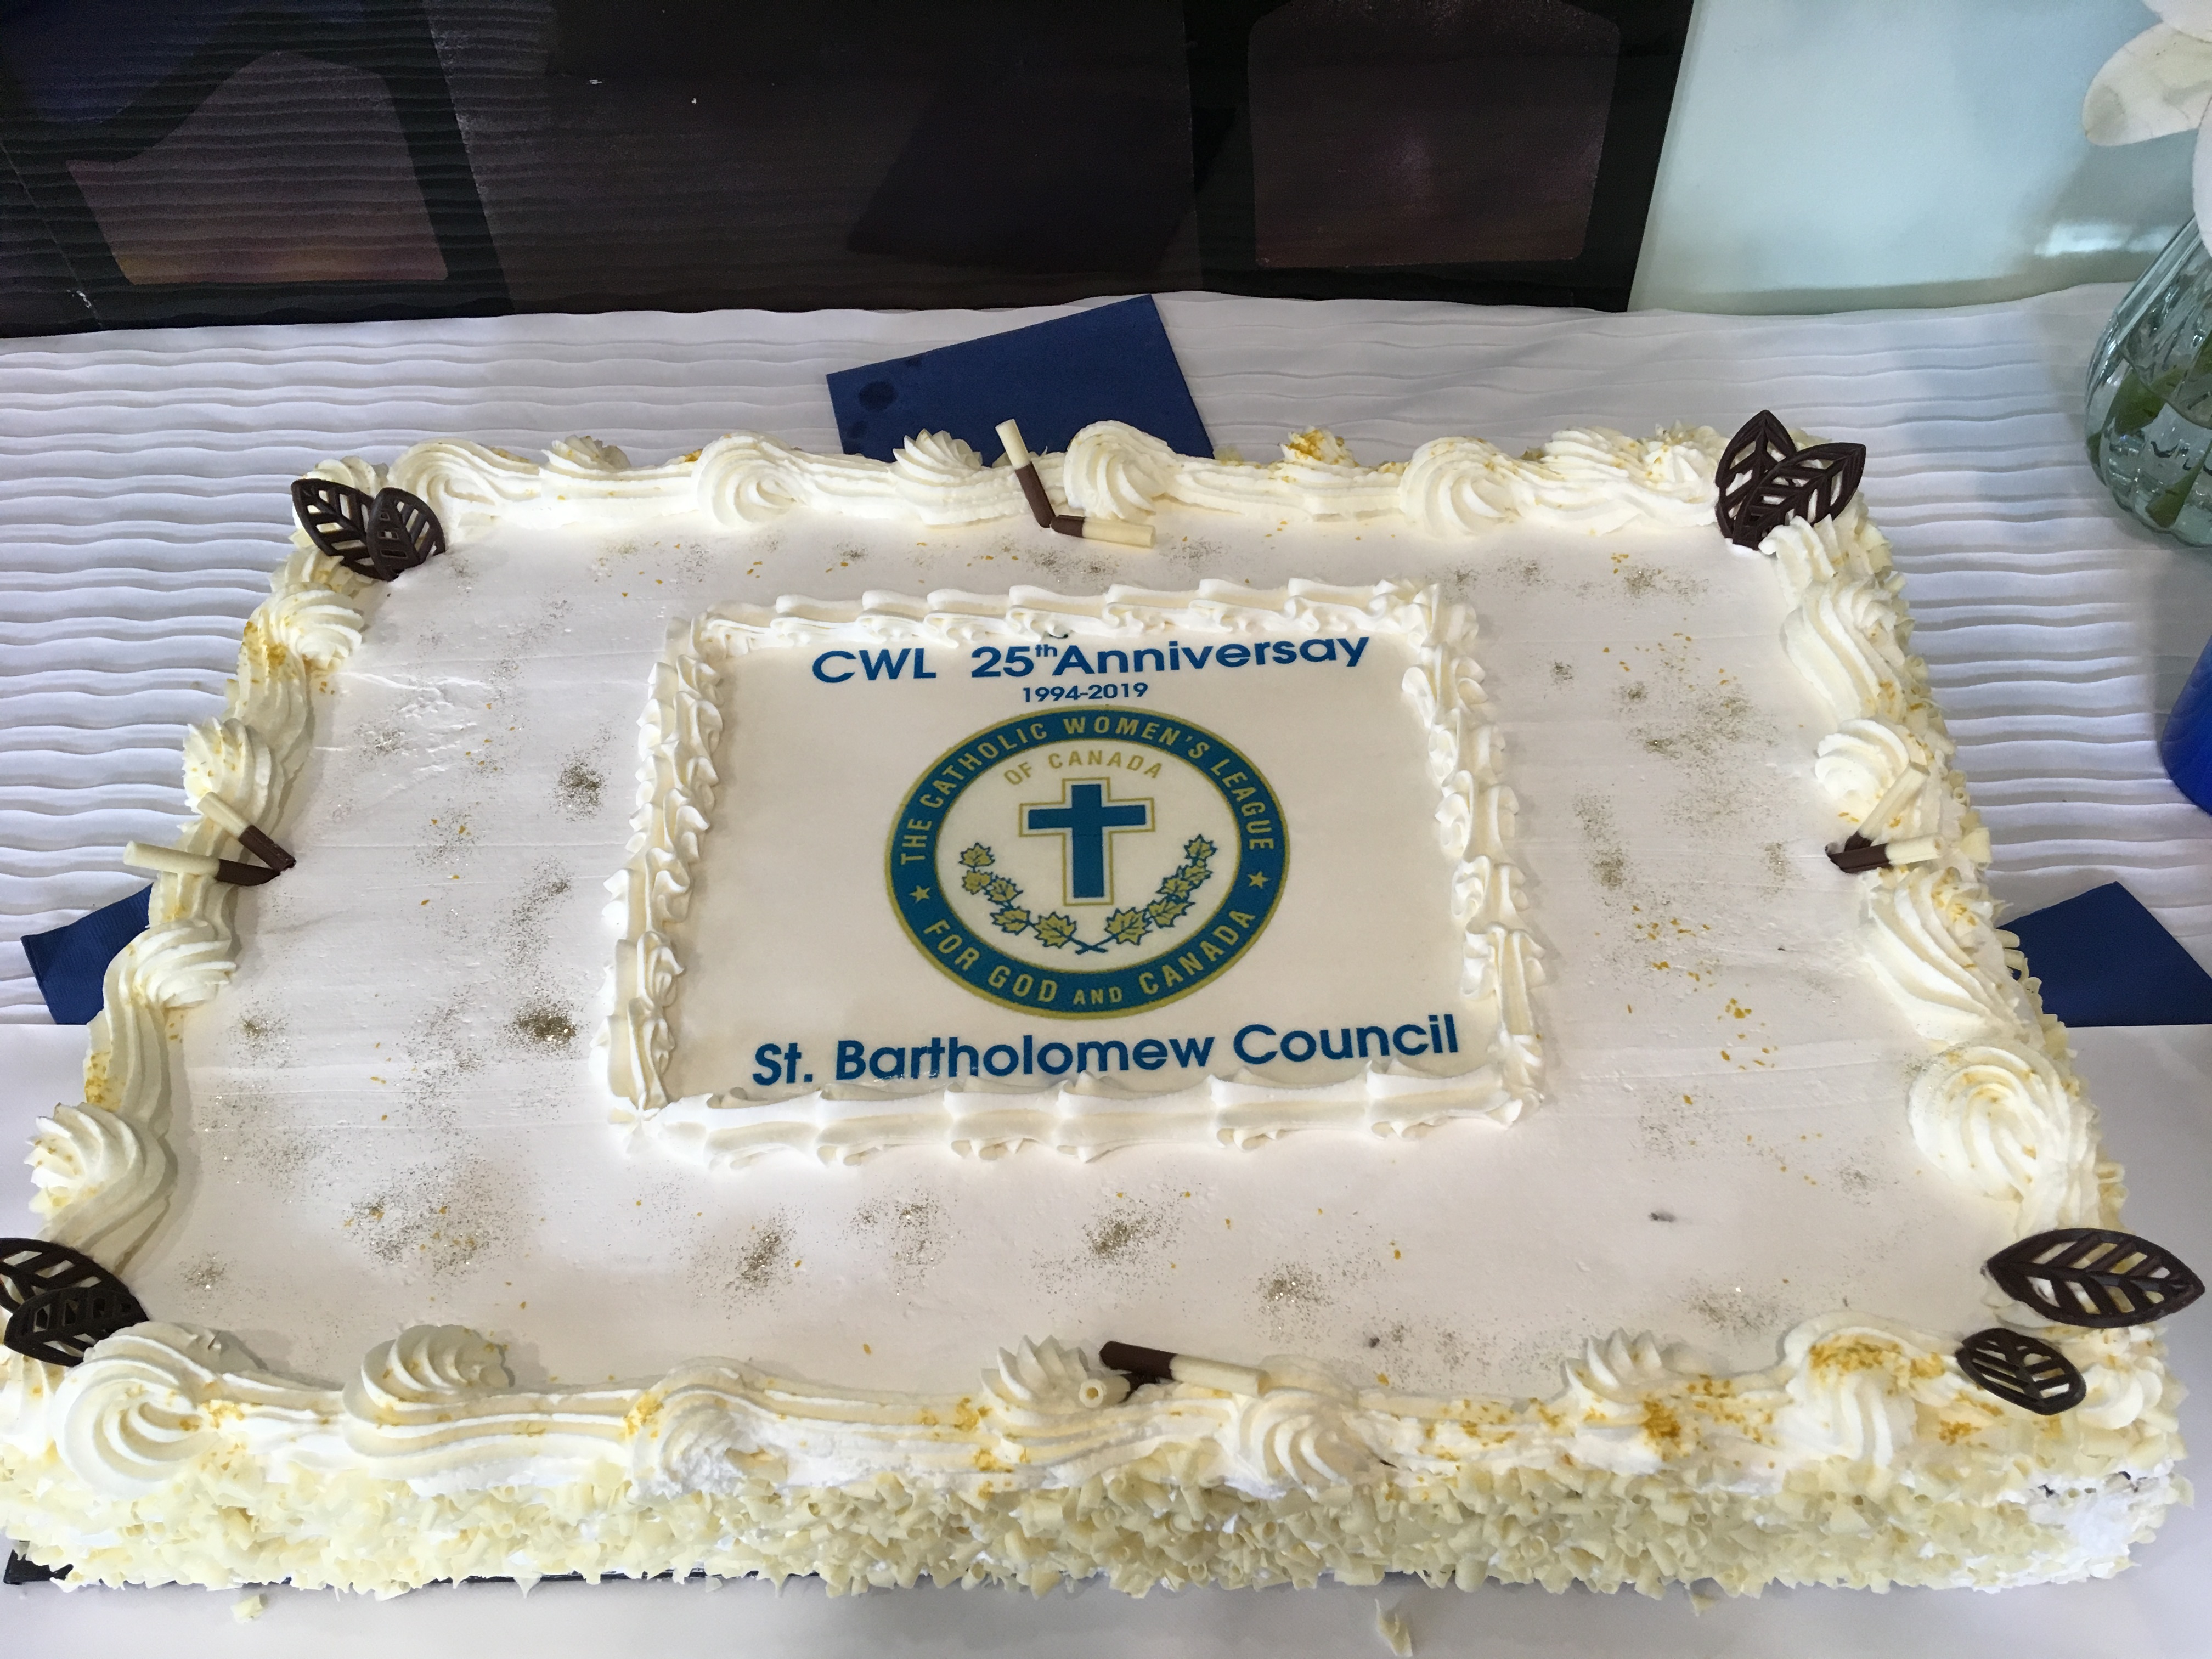 CWL 25th anniversary cake